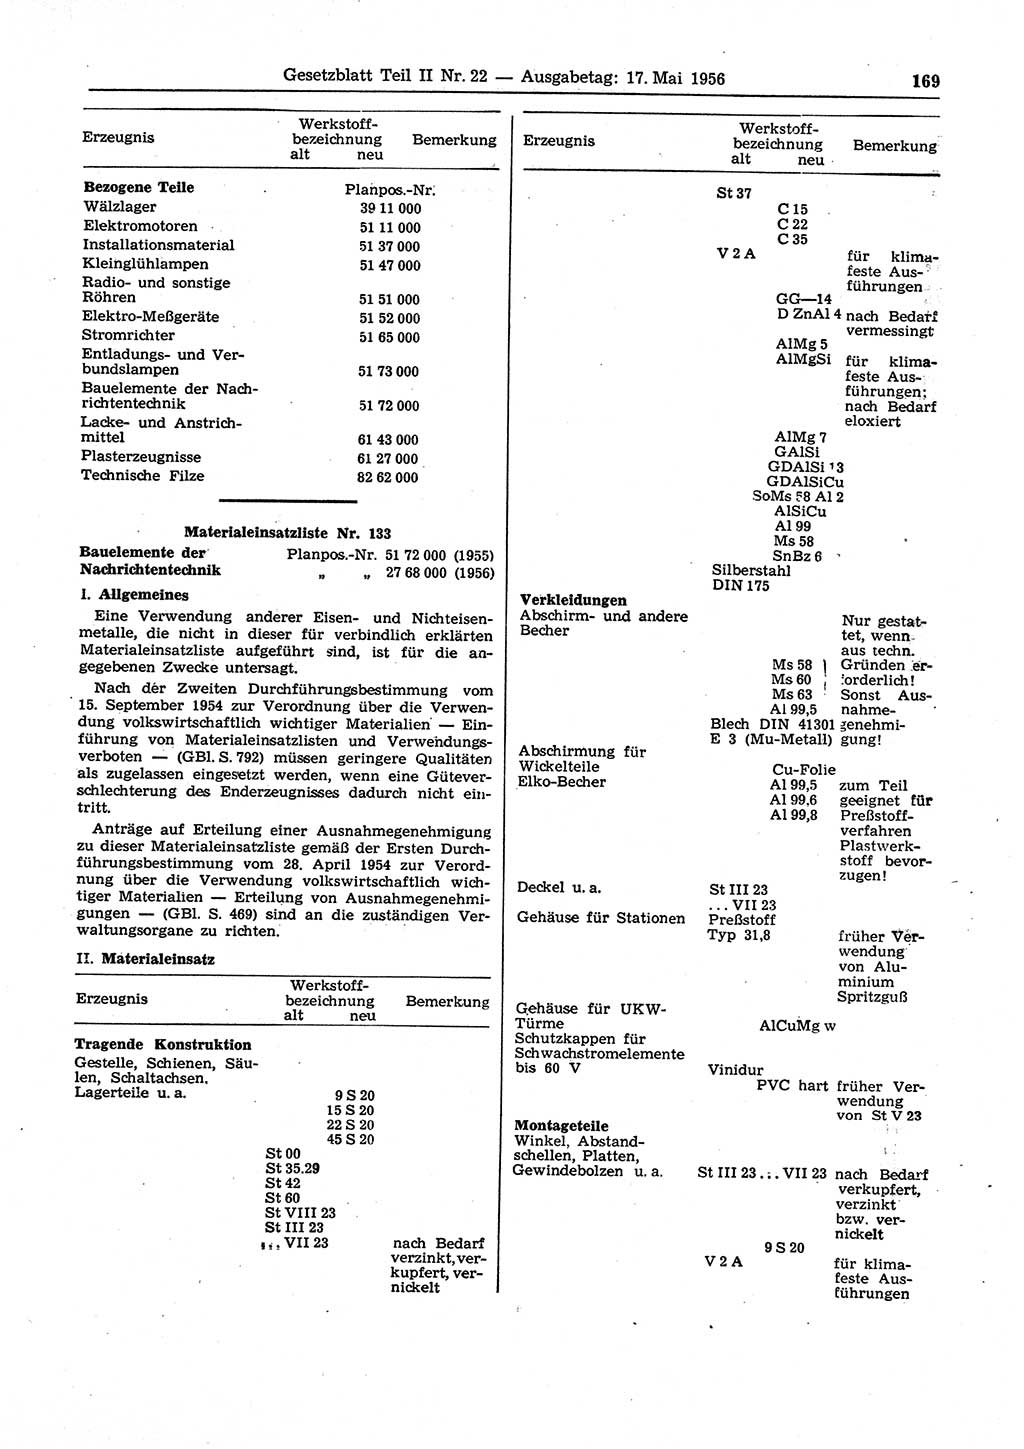 Gesetzblatt (GBl.) der Deutschen Demokratischen Republik (DDR) Teil ⅠⅠ 1956, Seite 169 (GBl. DDR ⅠⅠ 1956, S. 169)